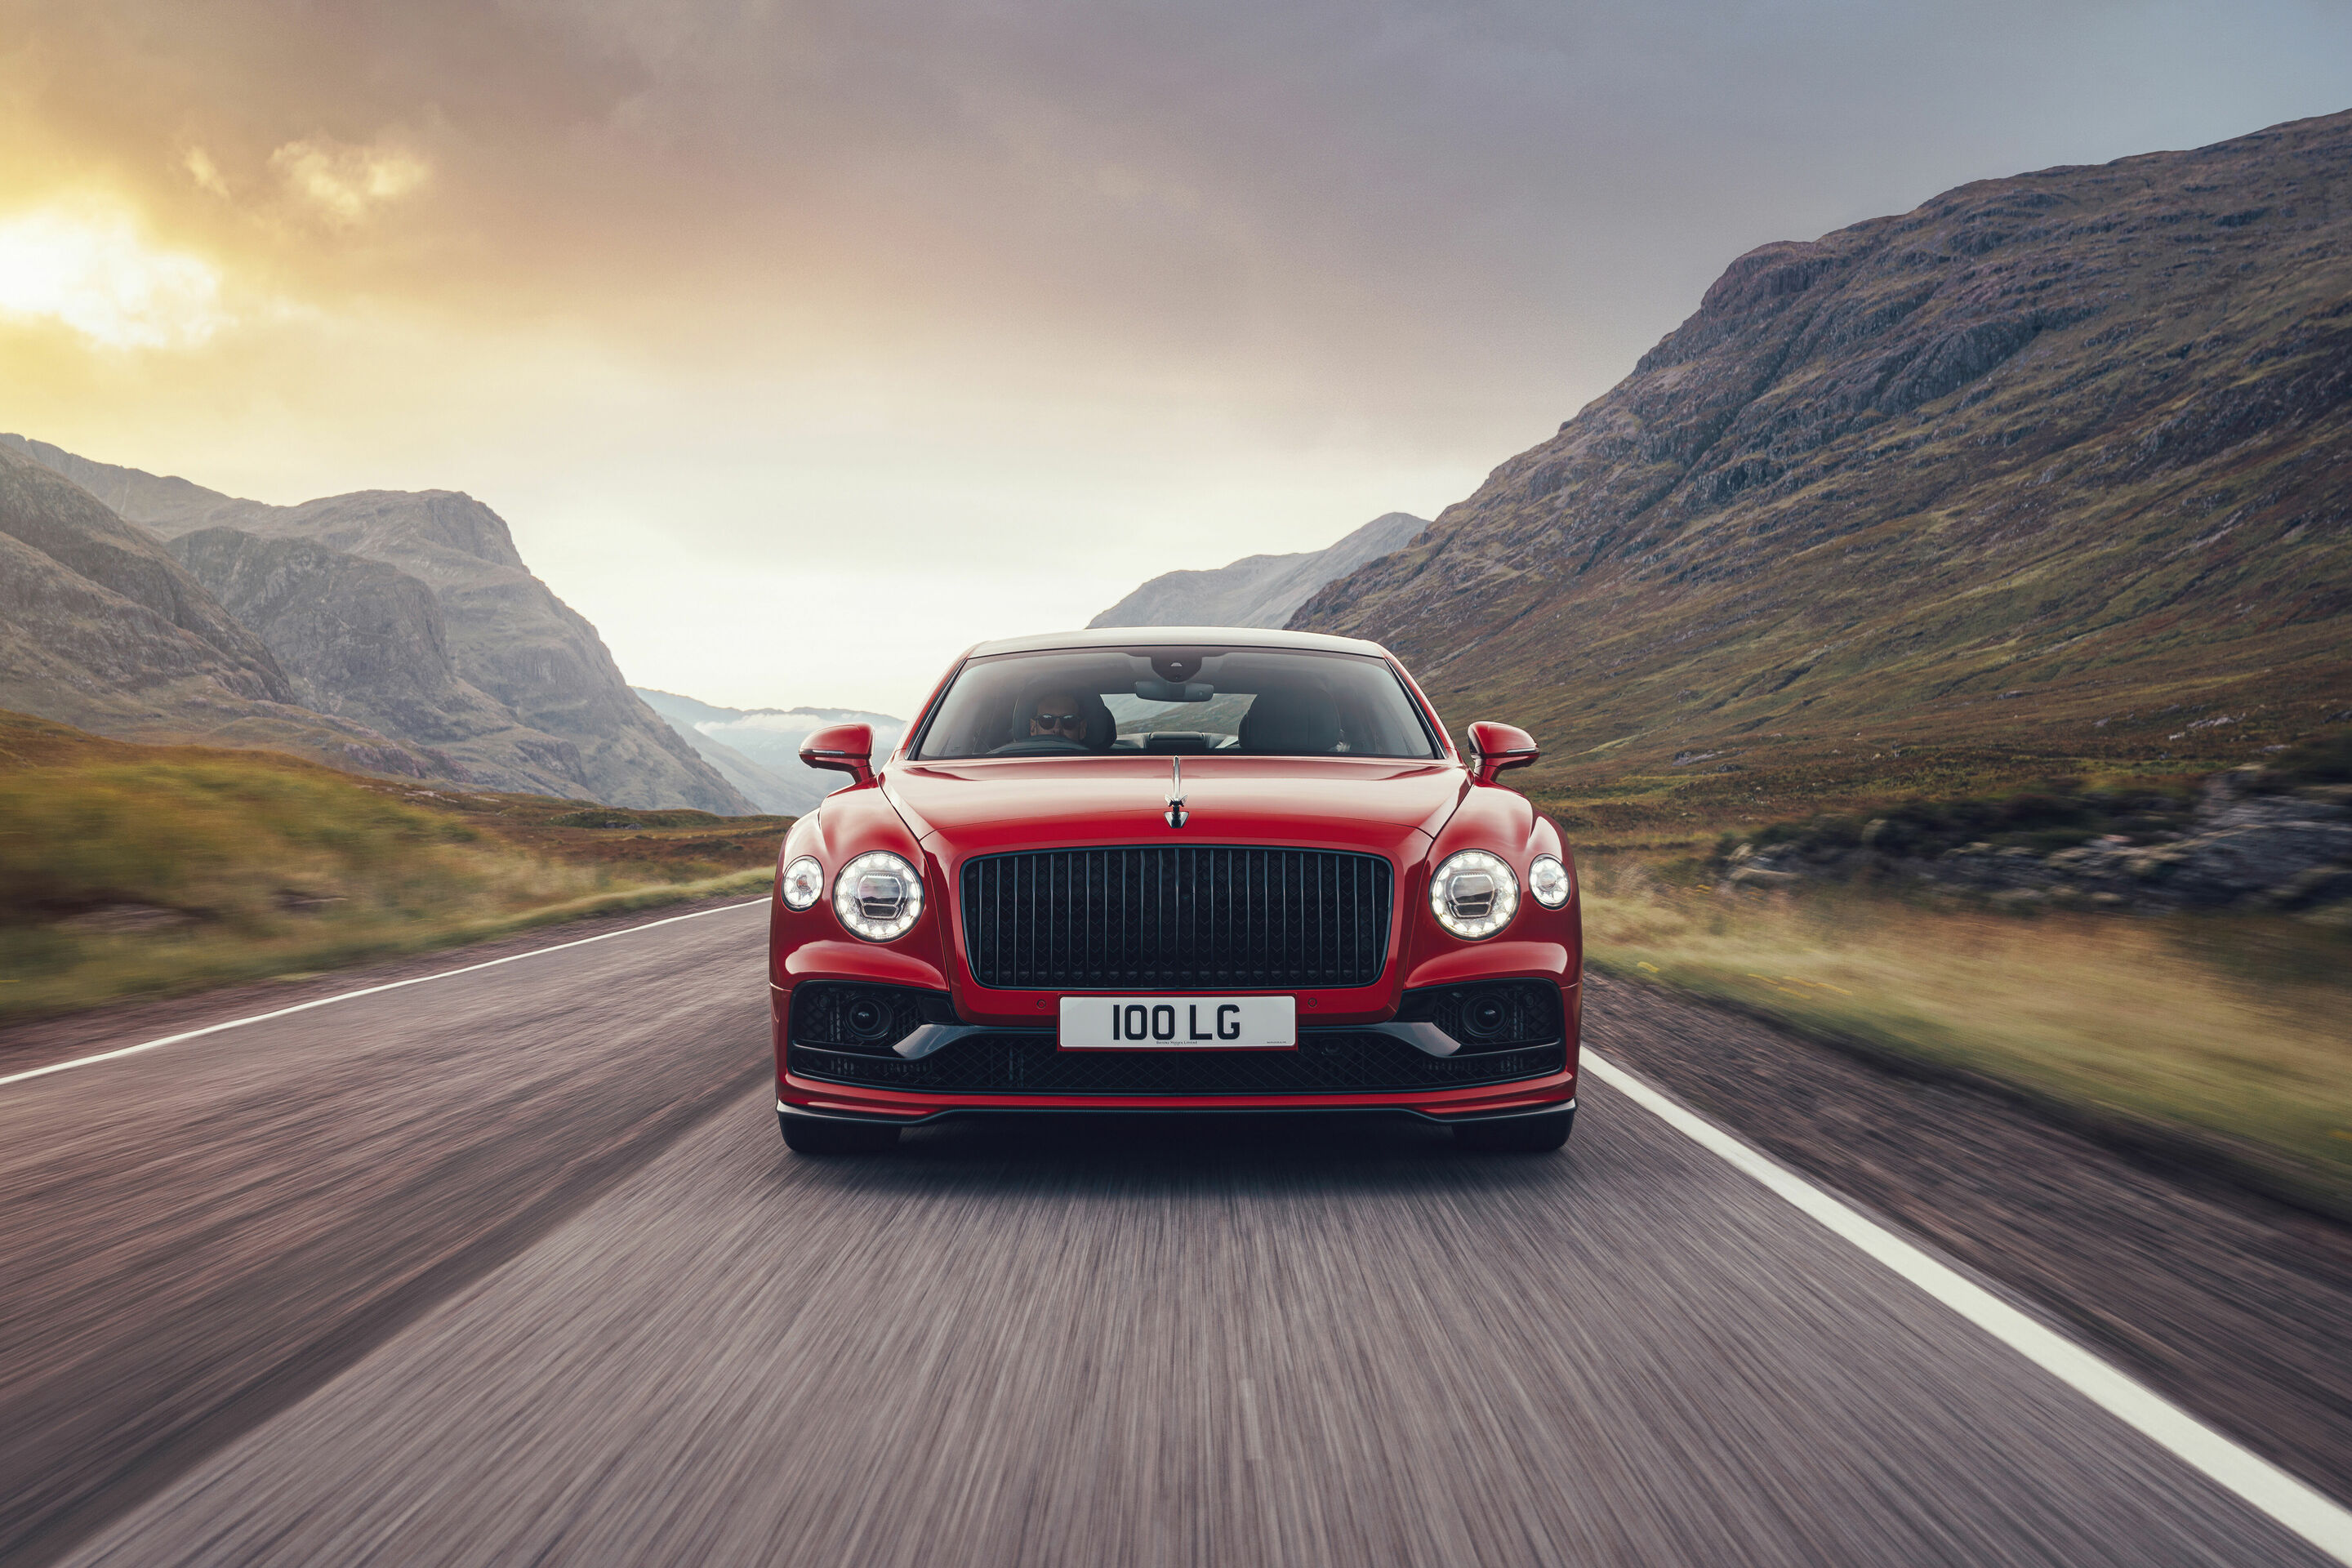 Nach Rekordverkaufszahlen im letzten Jahr erlebt Bentley das beste erste Quartal seiner Geschichte